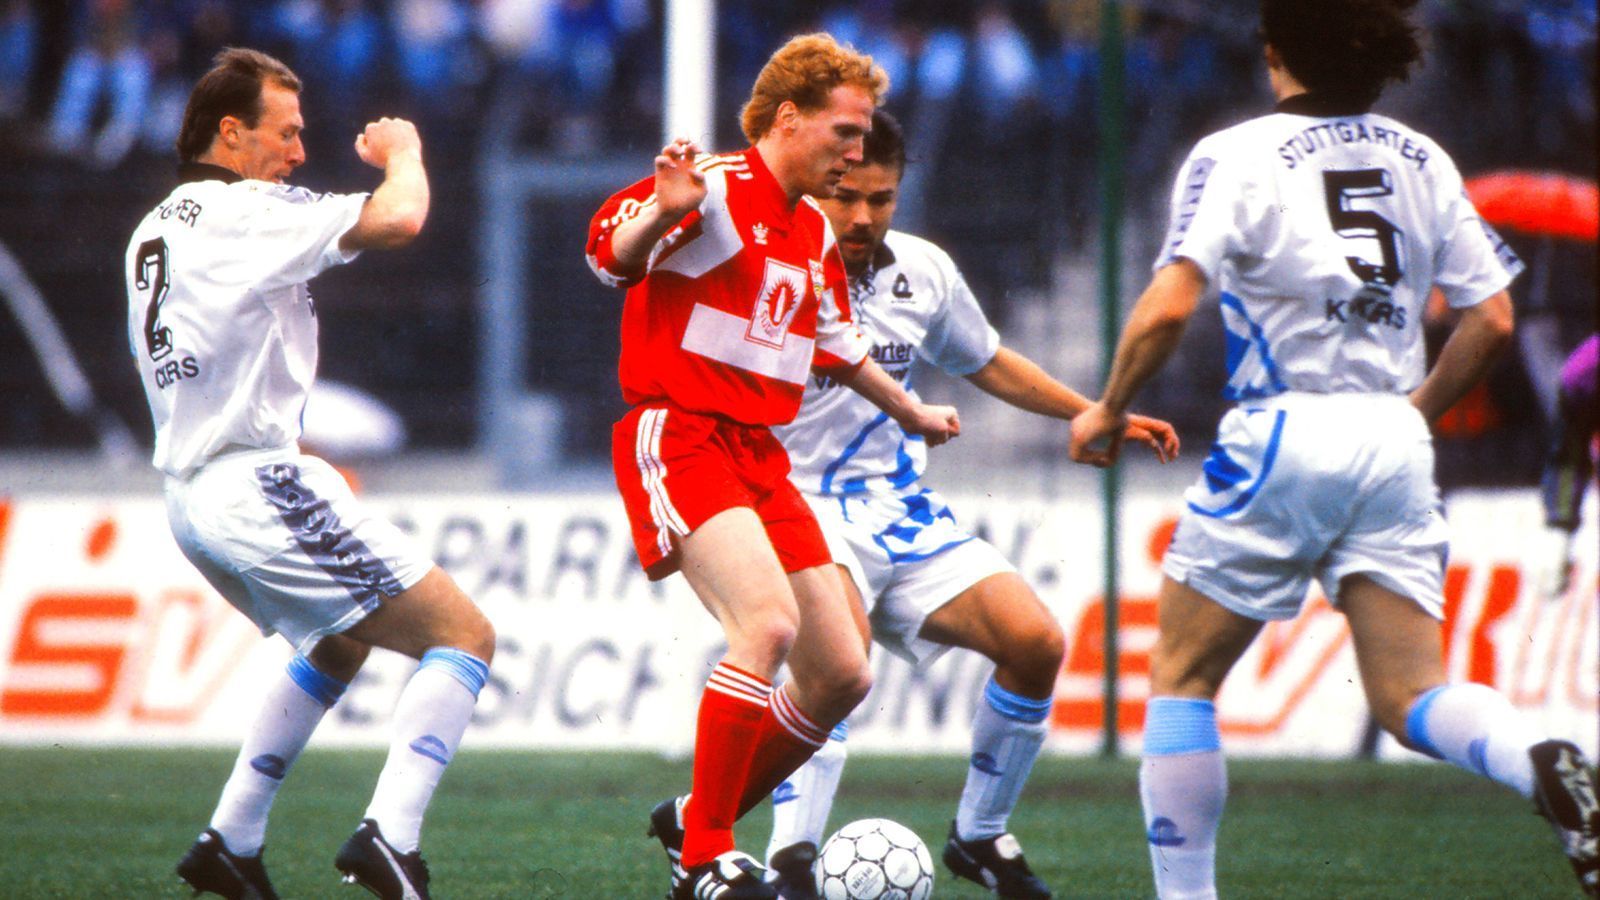 
                <strong>Stuttgart: VfB Stuttgart und Stuttgarter Kickers</strong><br>
                Gemeinsame Saisonen in der Bundesliga: 1988/89 und 1991/91
              